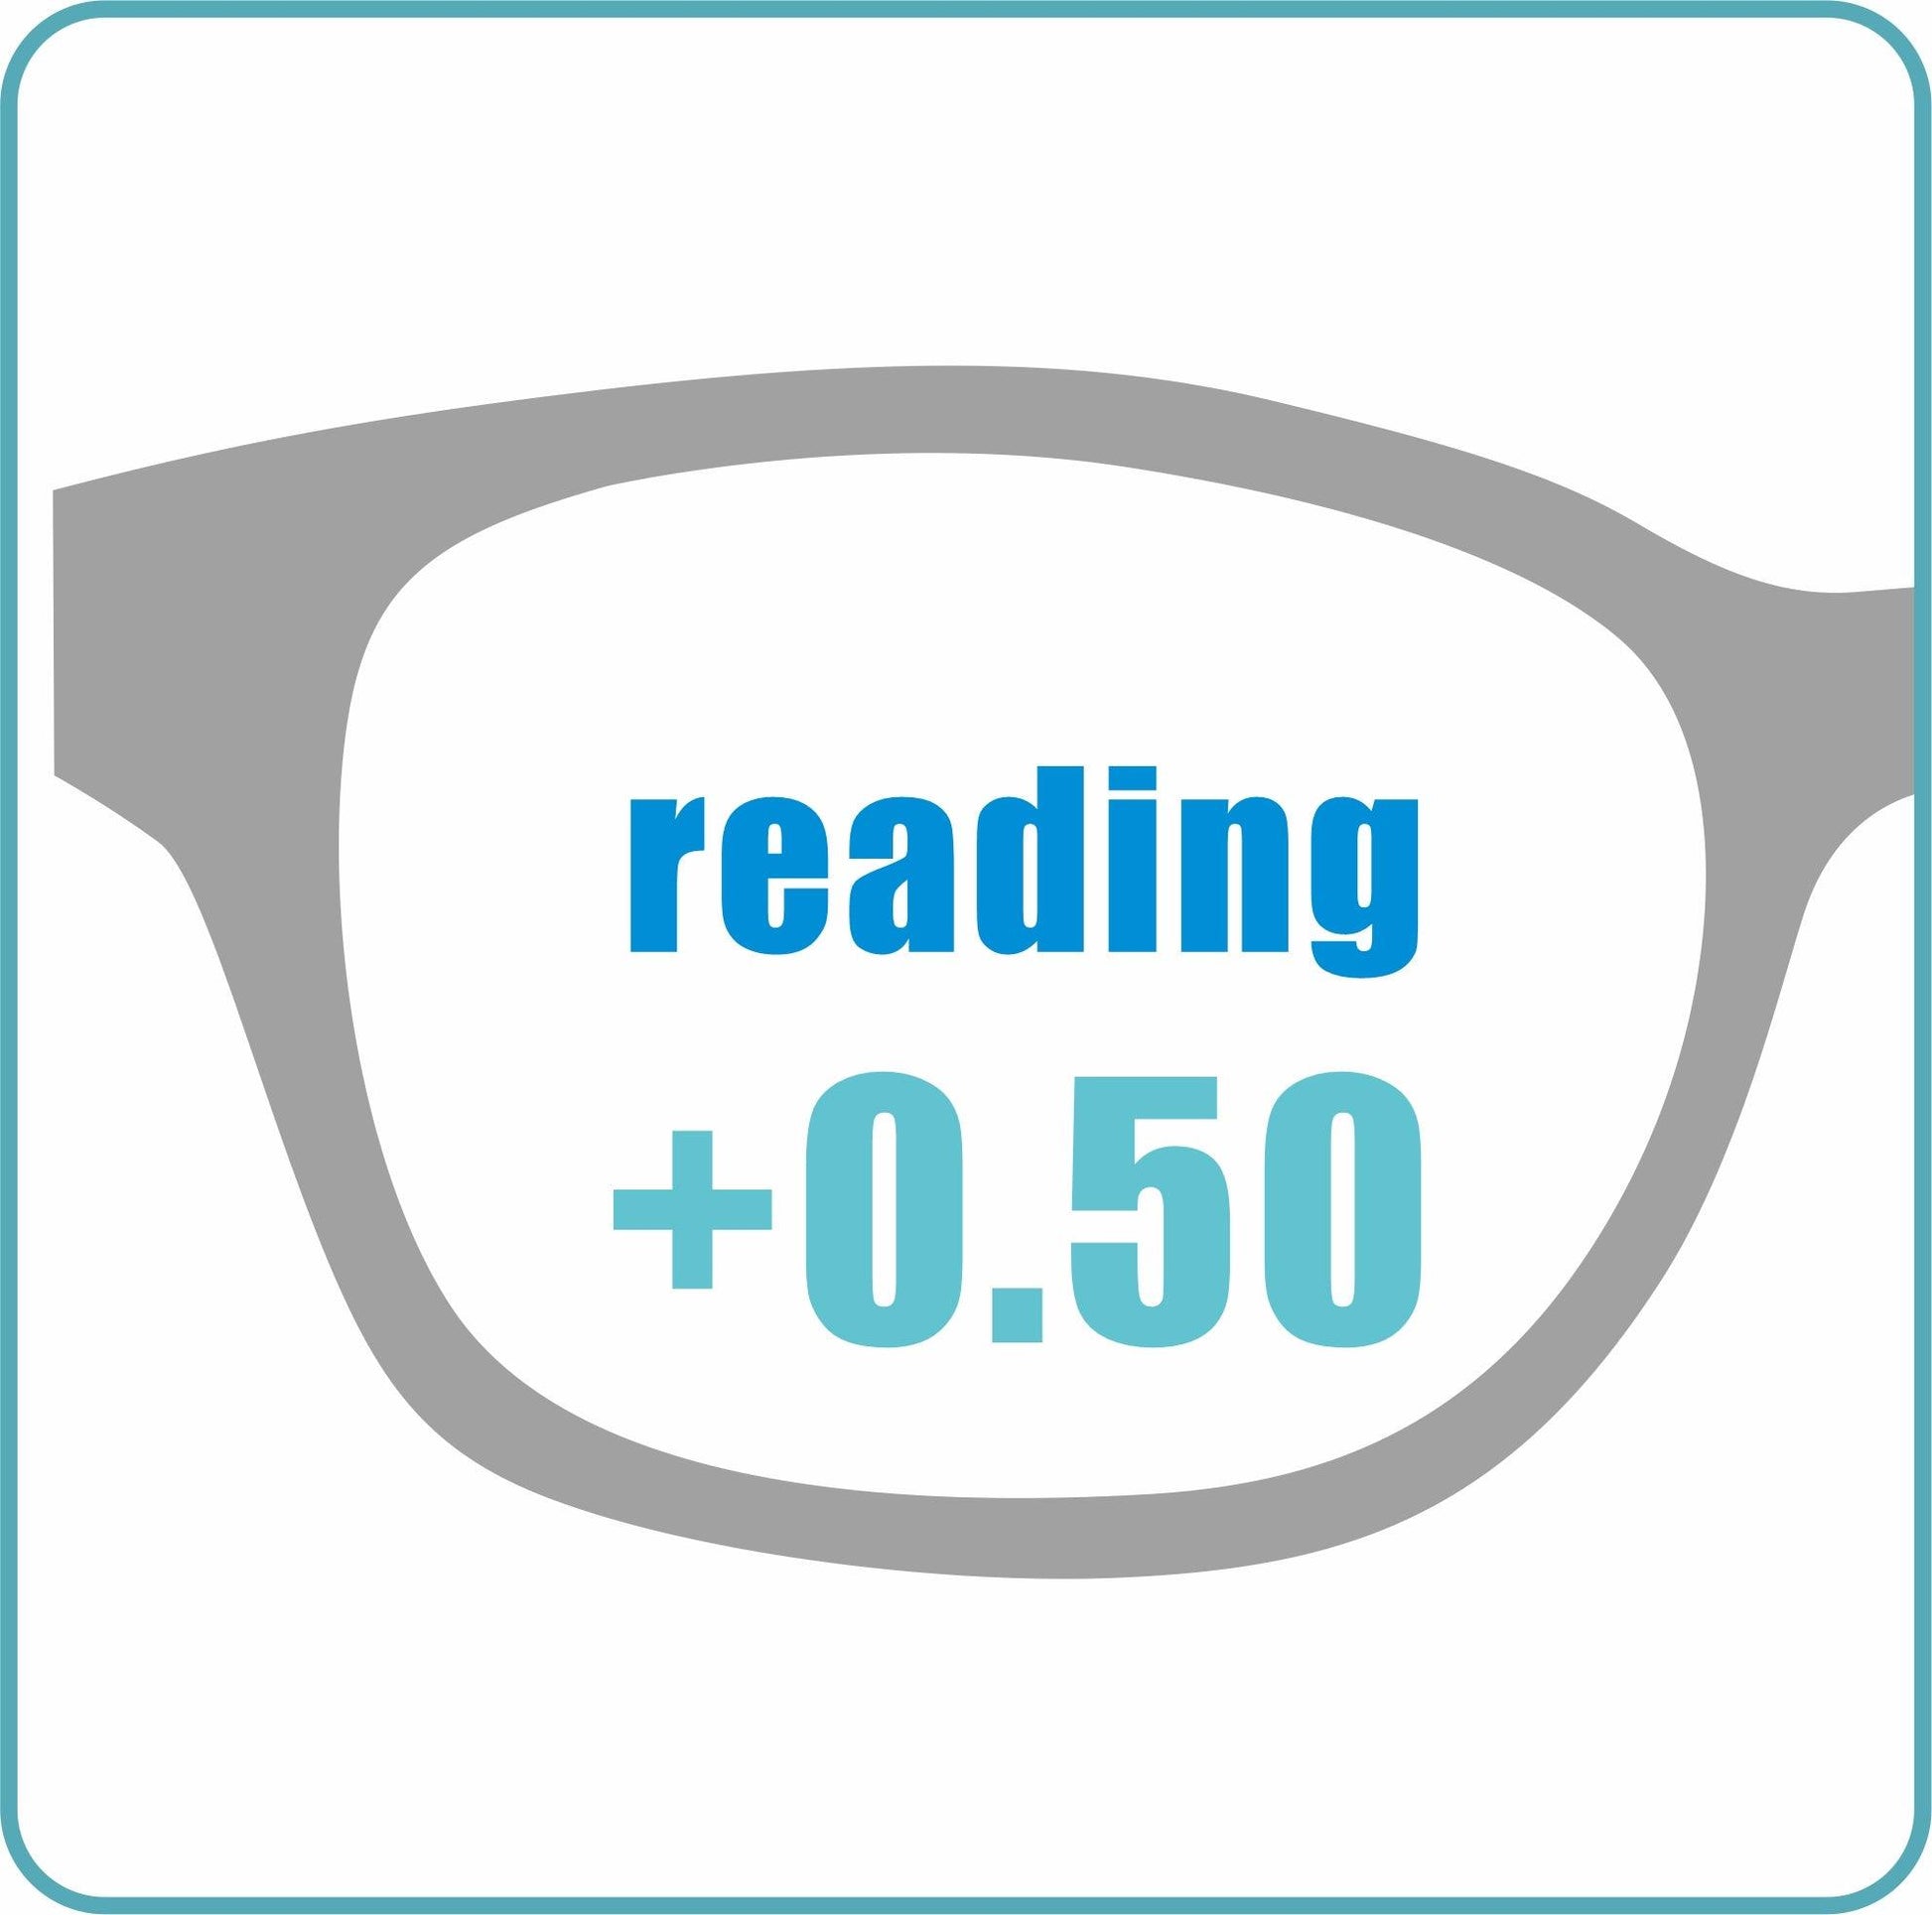 Acetate L 72029C1 Square Black Reading glasses - takeprogressive